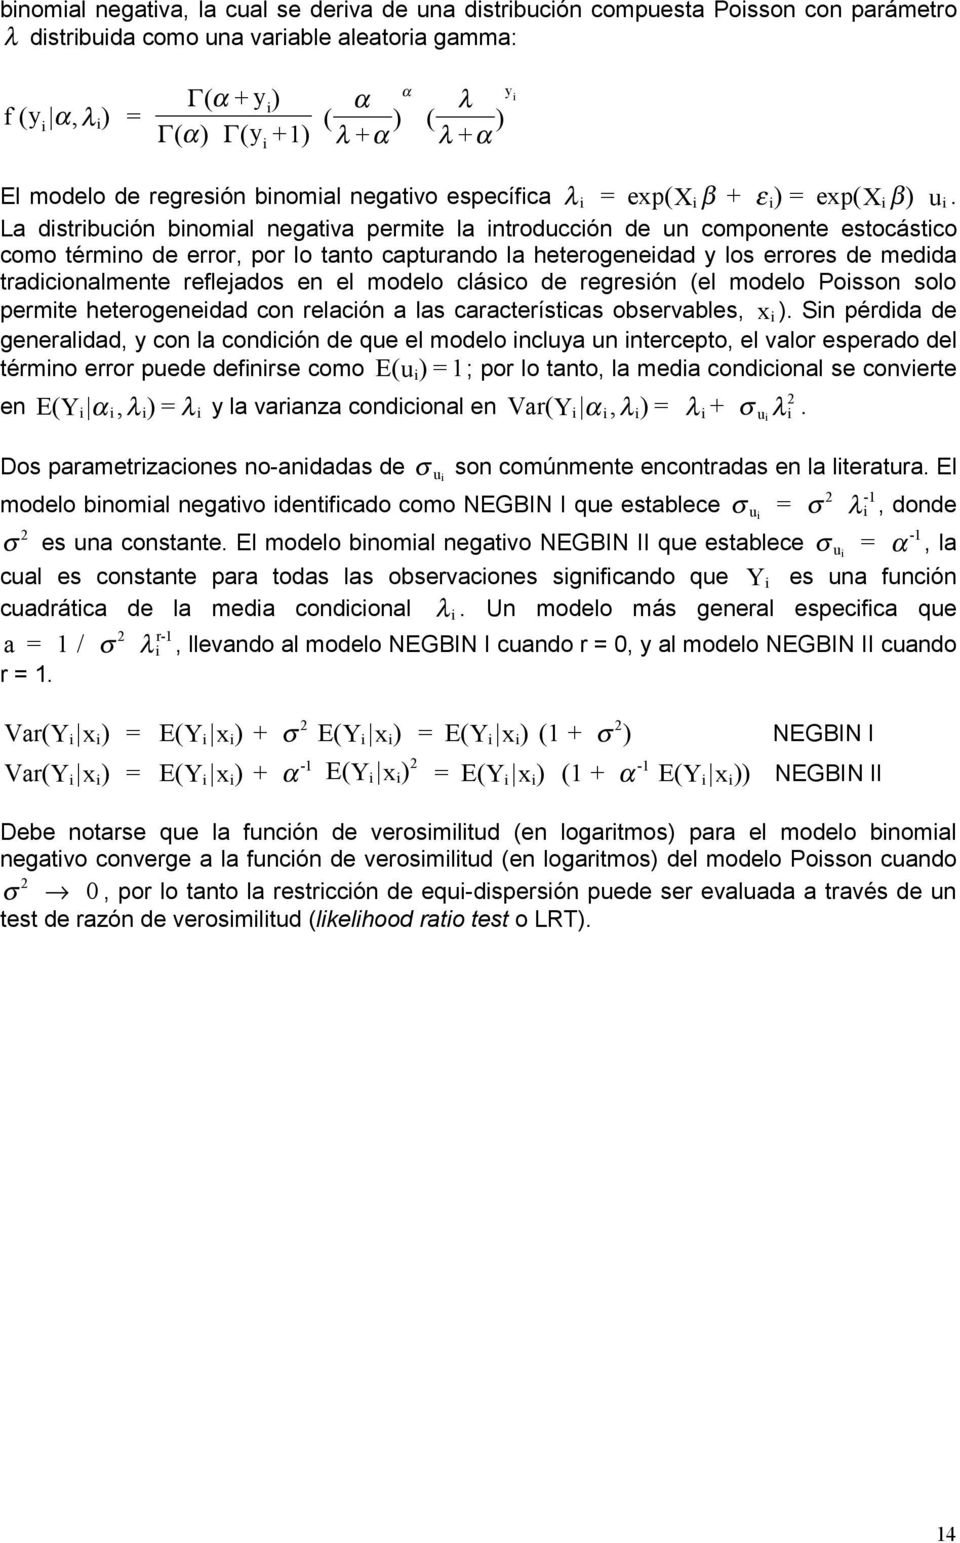 La distribución binomial negativa permite la introducción de un componente estocástico como término de error, por lo tanto capturando la heterogeneidad y los errores de medida tradicionalmente